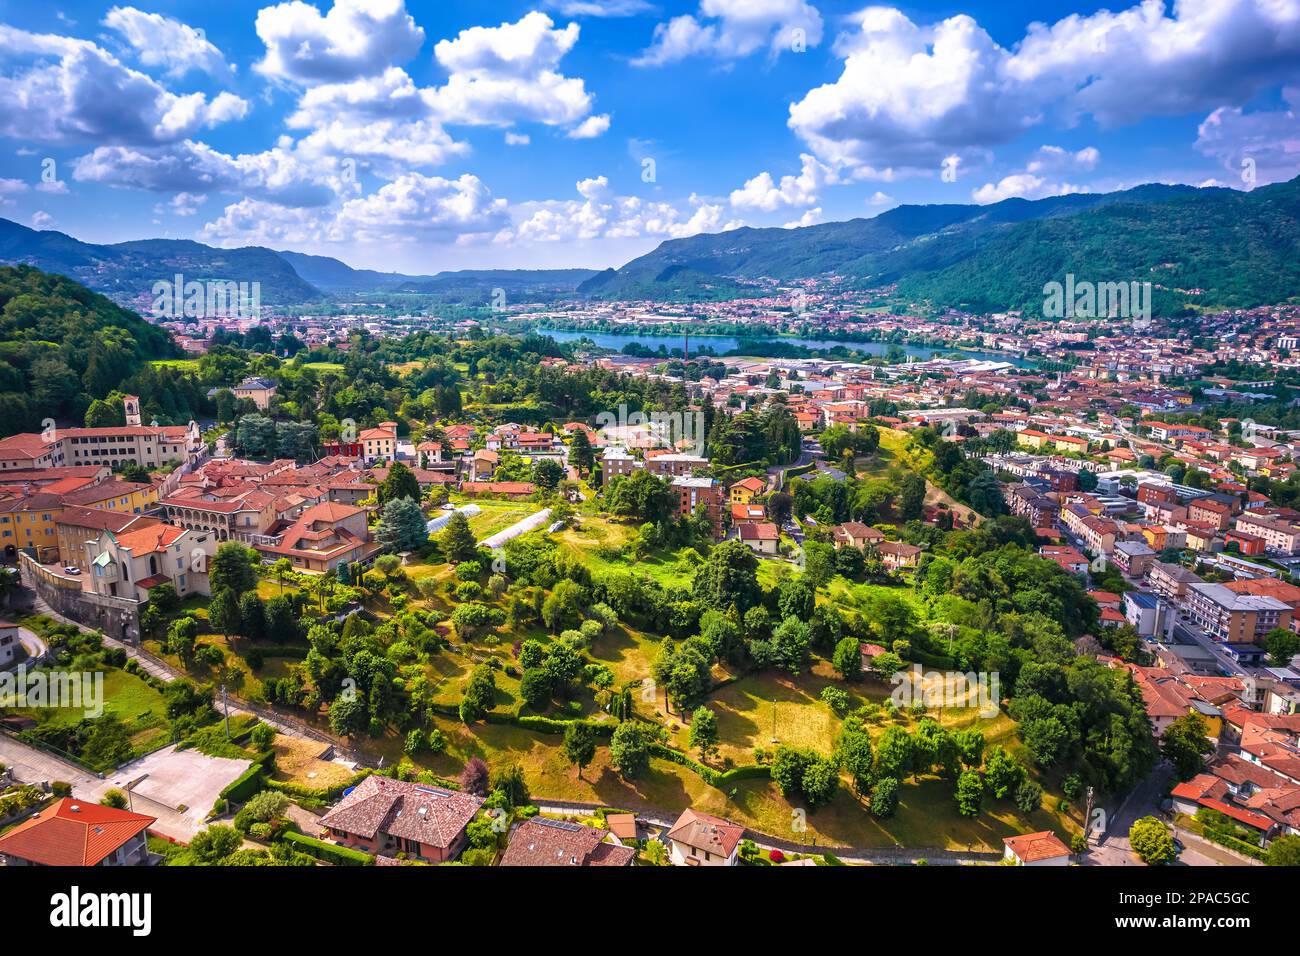 Stadt Calolziocorte, unvergleichlicher Panoramablick, Comer See in der Region Lombardei in Italien Stockfoto